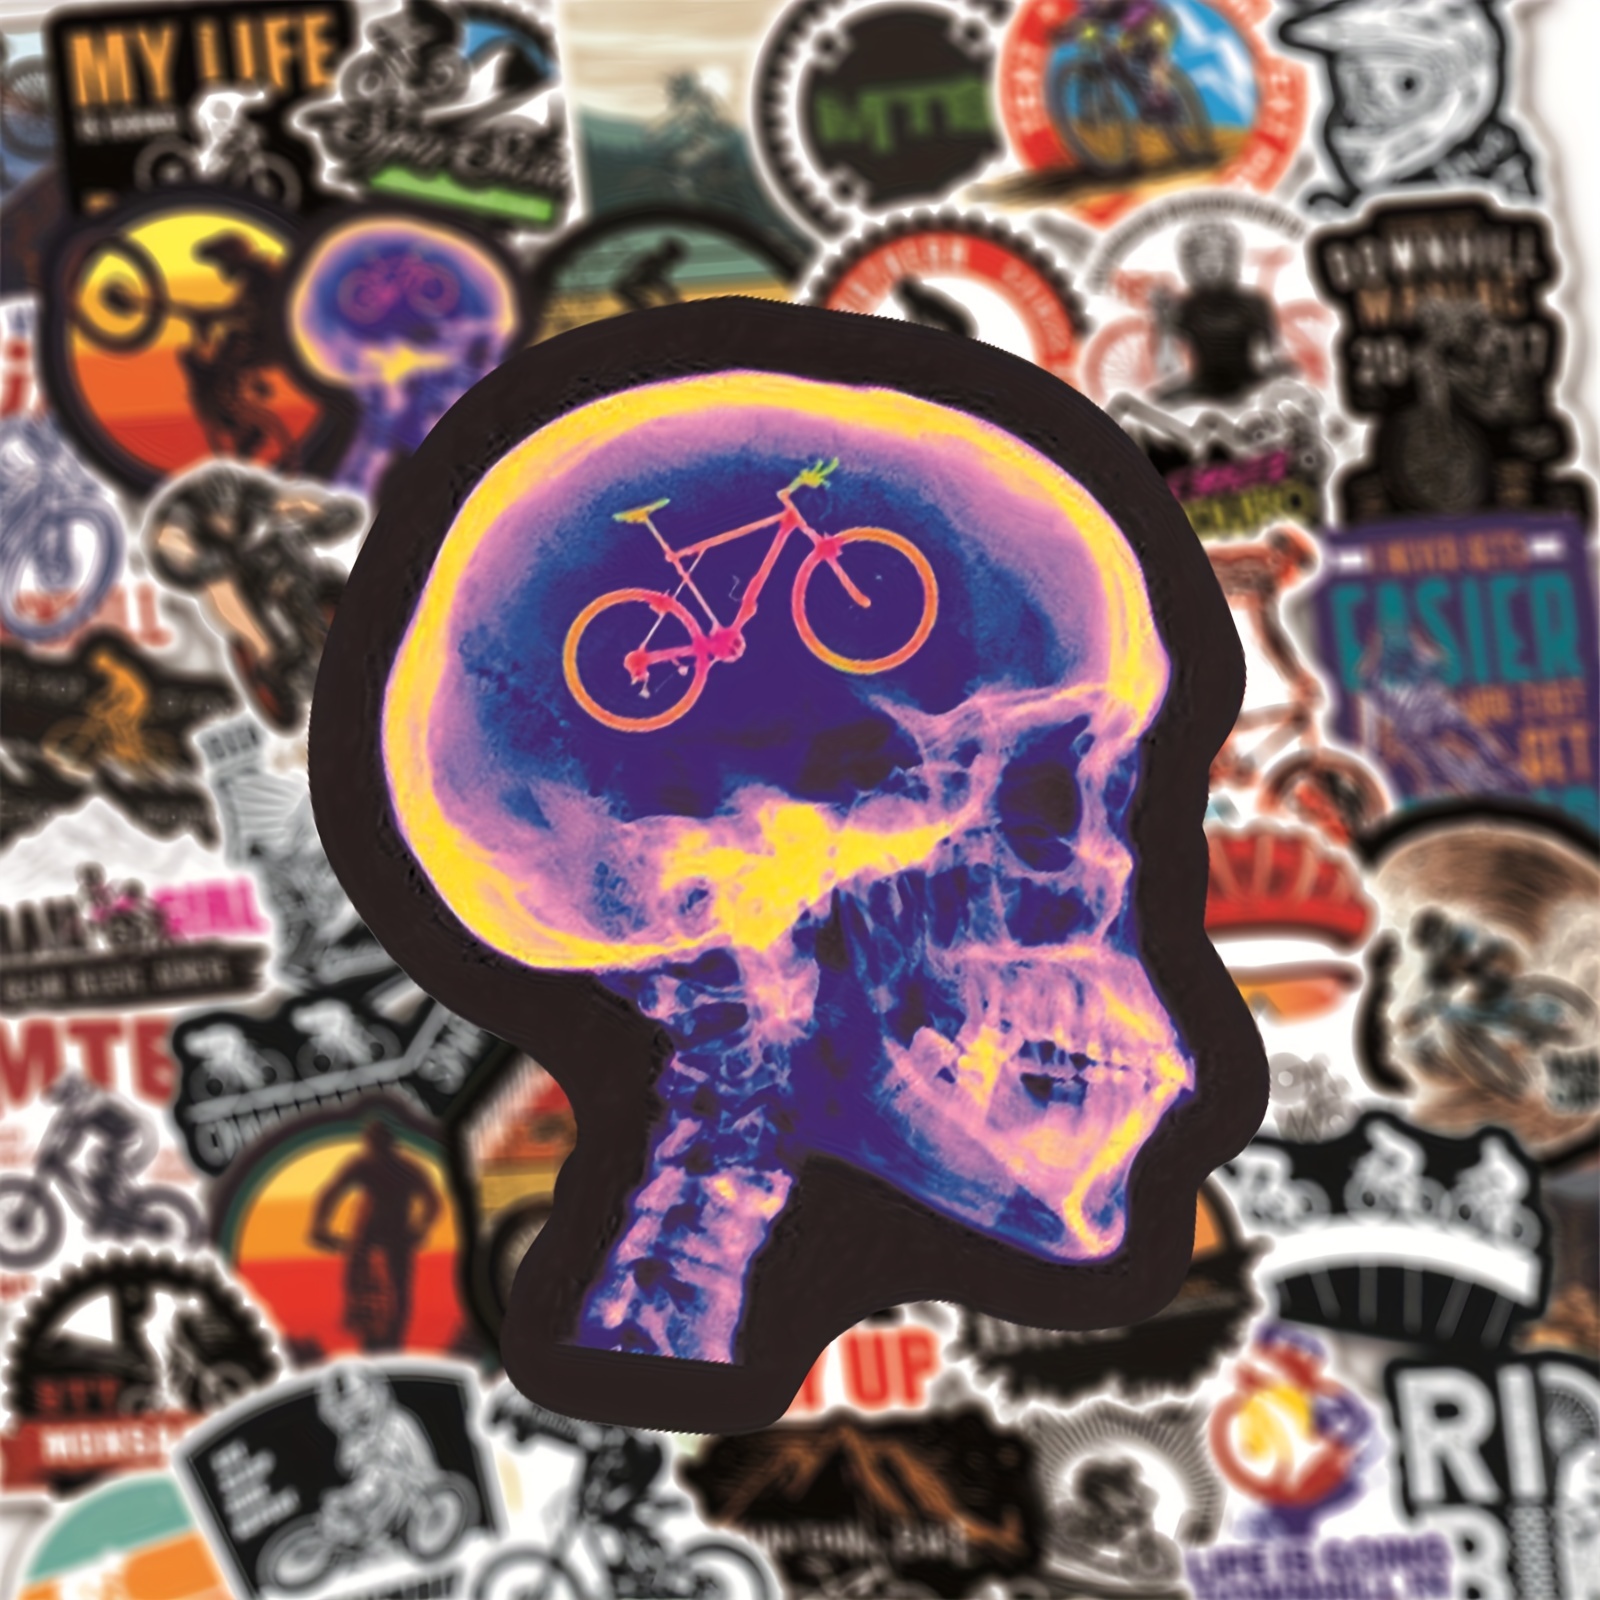 Motorcycle Series Waterproof Graffiti Stickers Motorcycle - Temu